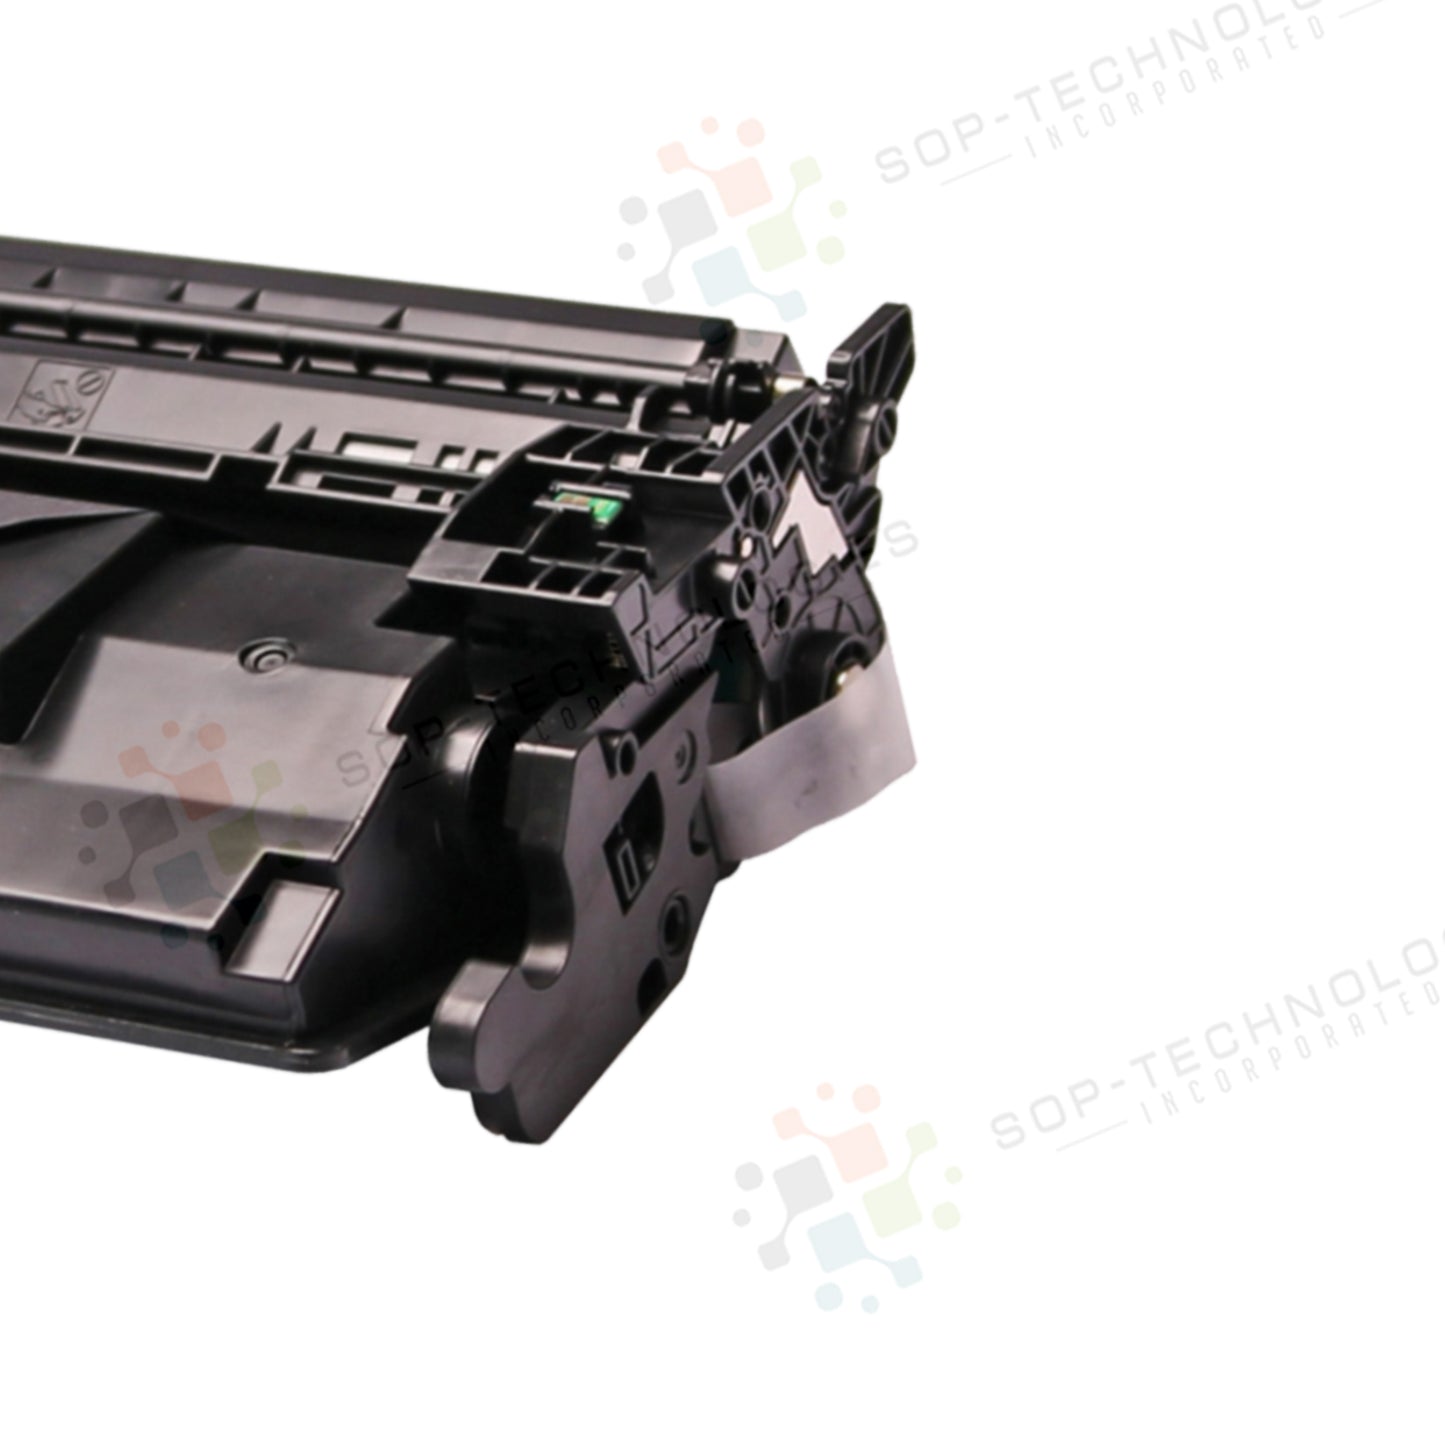 3pk Toner Cartridge Compatible Replacement for Canon imageCLASS LBP214dw - SOP-TECHNOLOGIES, INC.